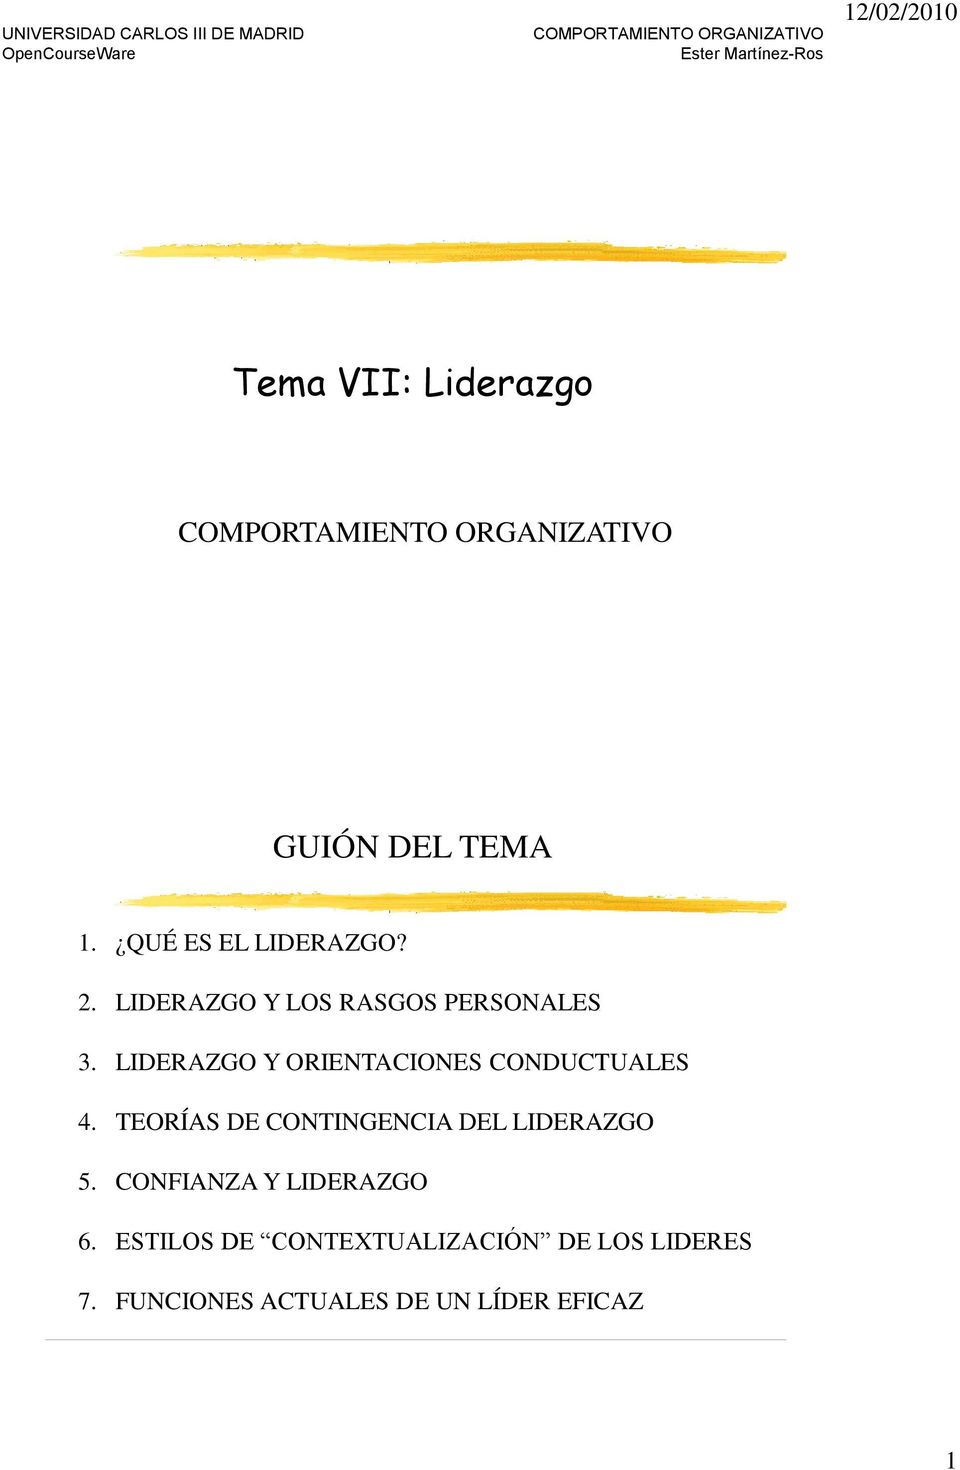 LIDERAZGO Y ORIENTACIONES CONDUCTUALES 4.